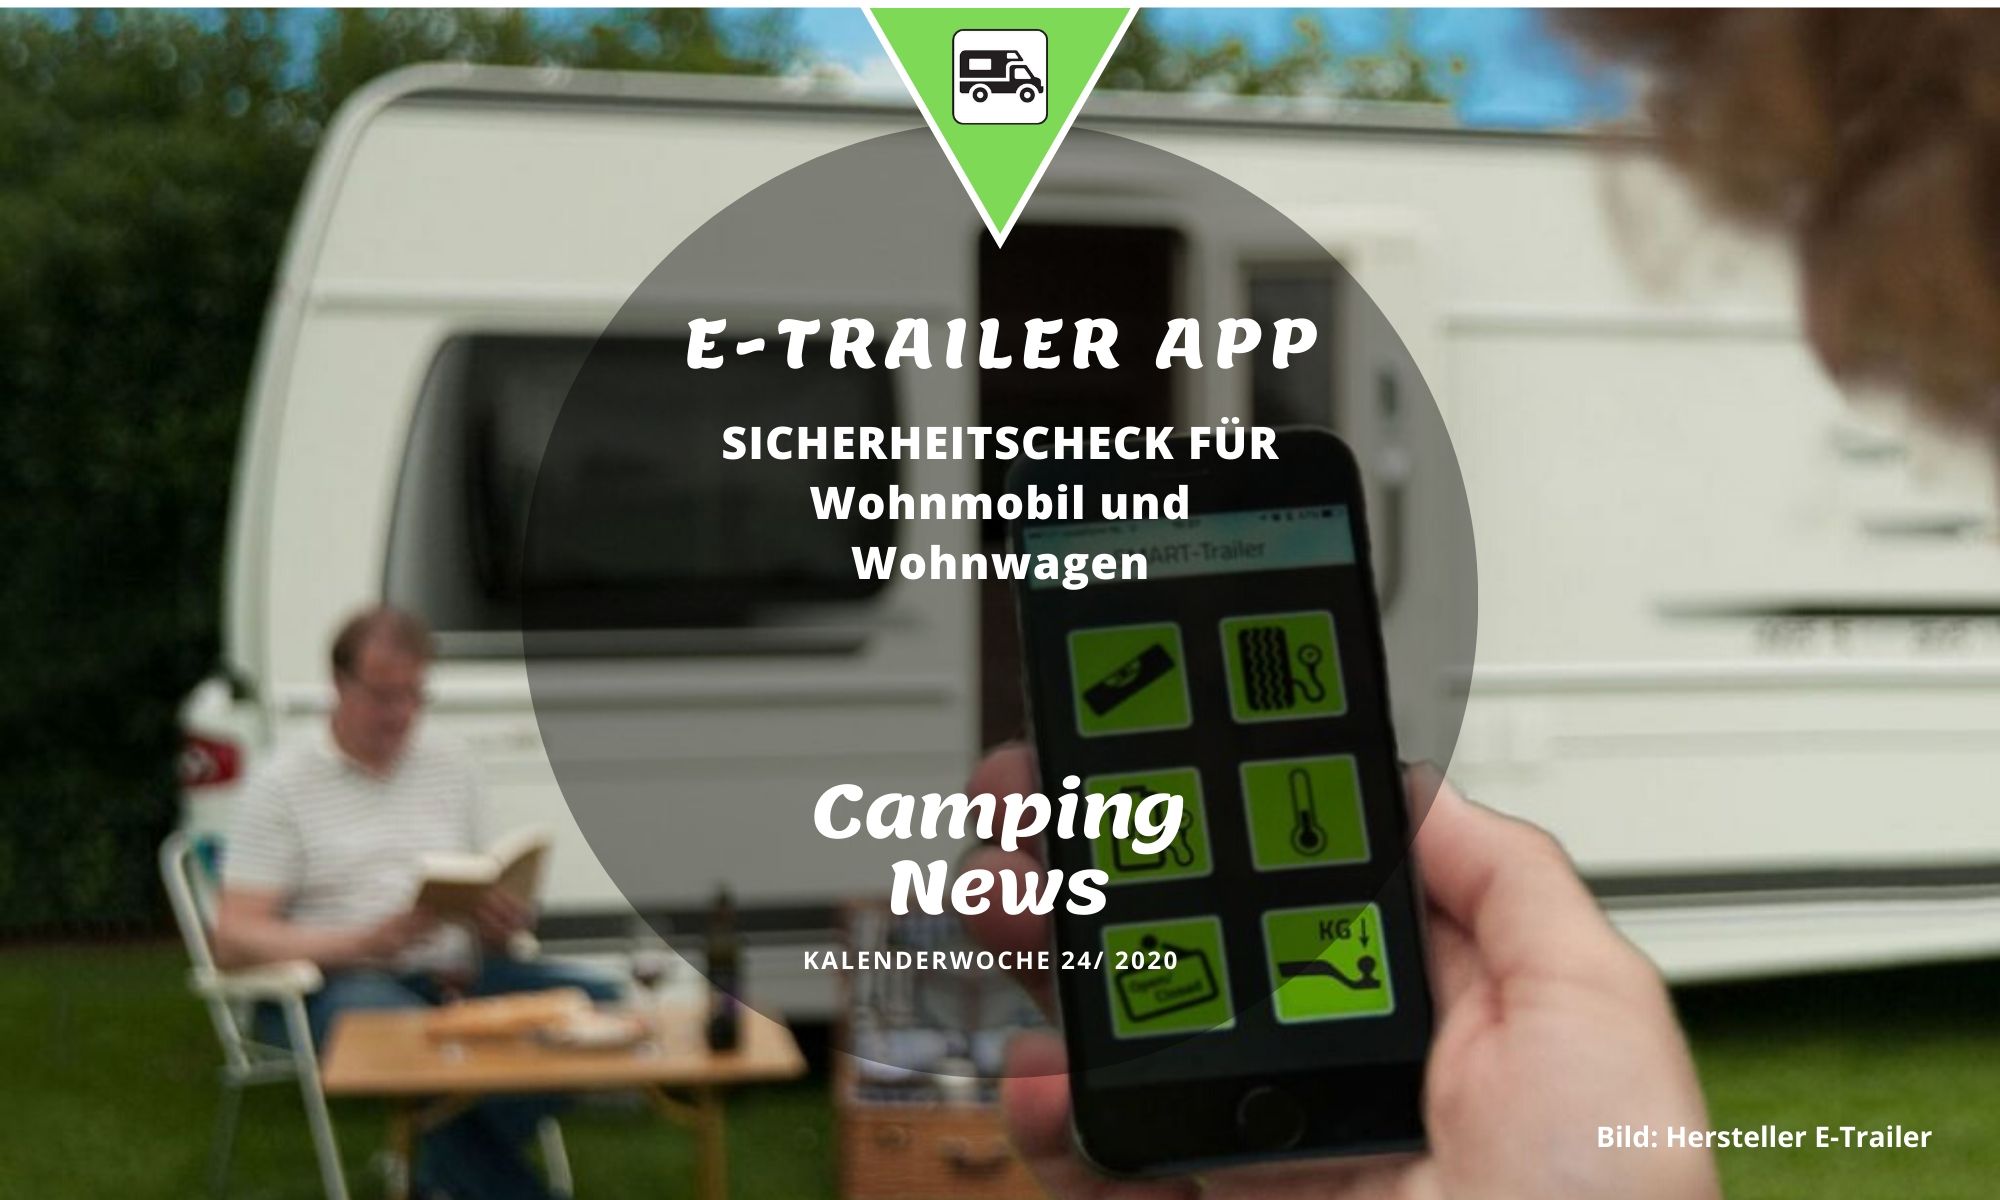 E-Trailer App für Wohnmobil und Wohnwagen